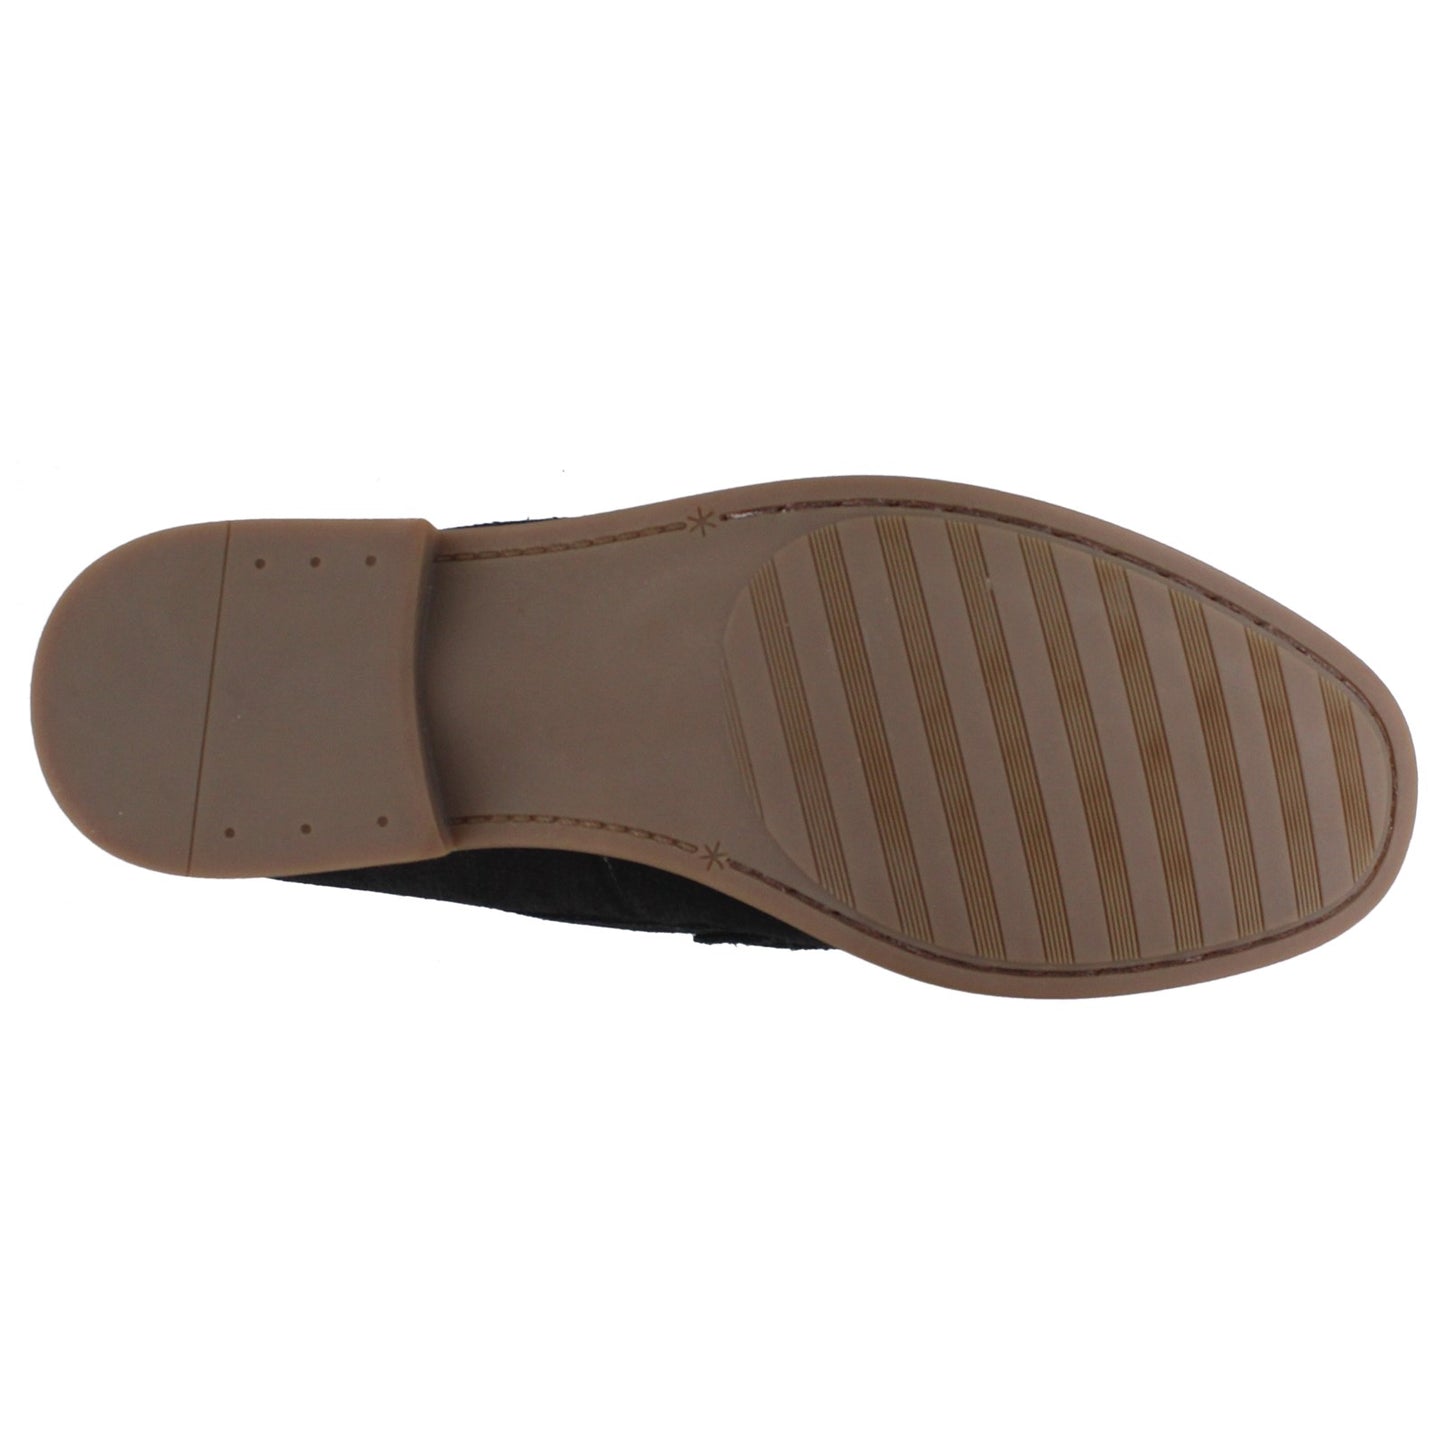 Peltz Shoes  Men's Stacy Adams Kelby Moc Toe Loafers BLACK 25088-001